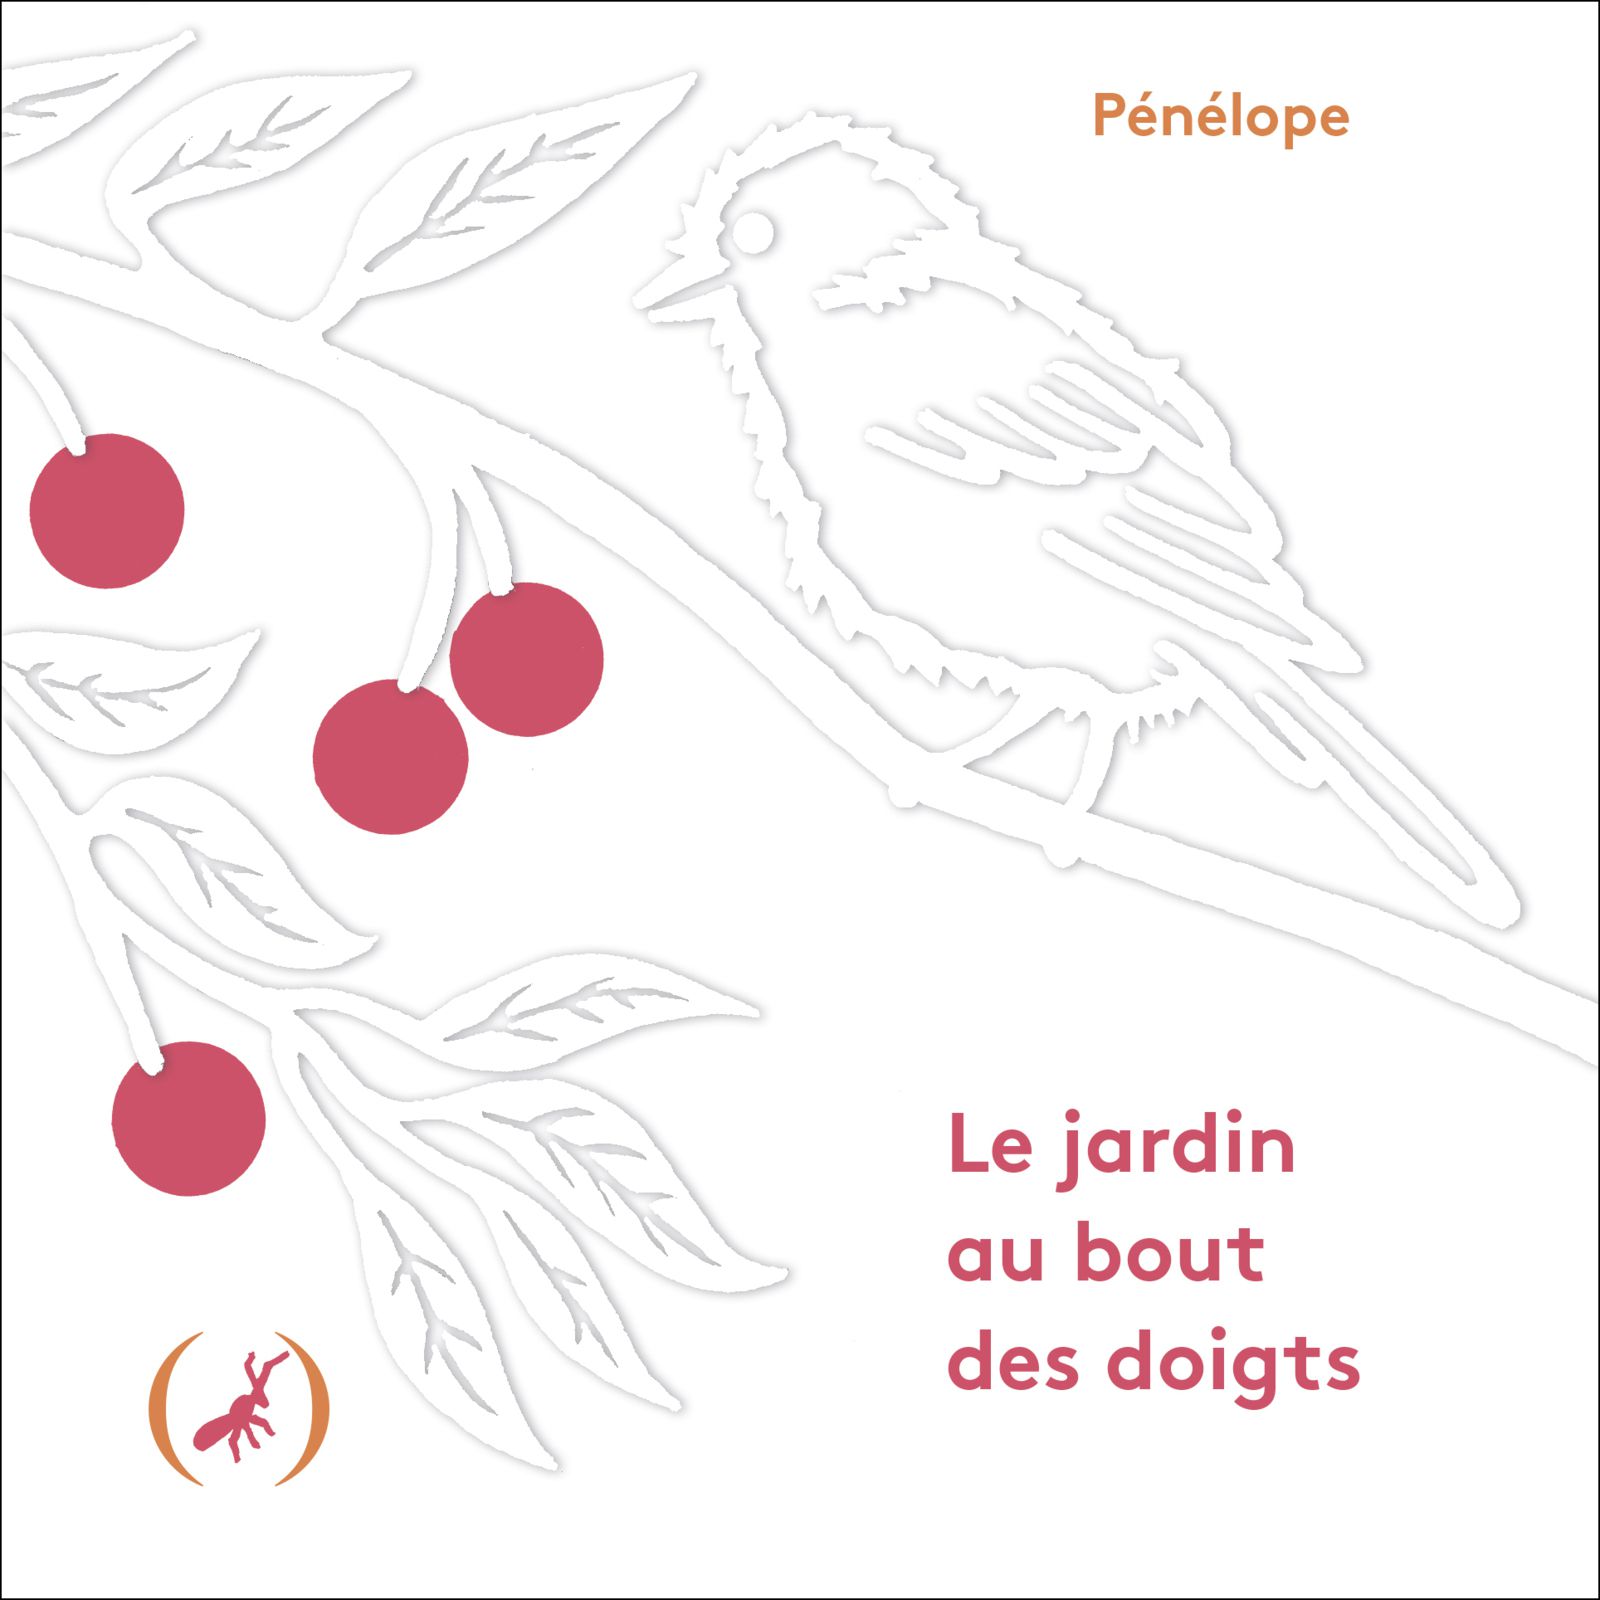 Pénélope "Le jardin au bout des doigts", éditions des Grandes Personnes